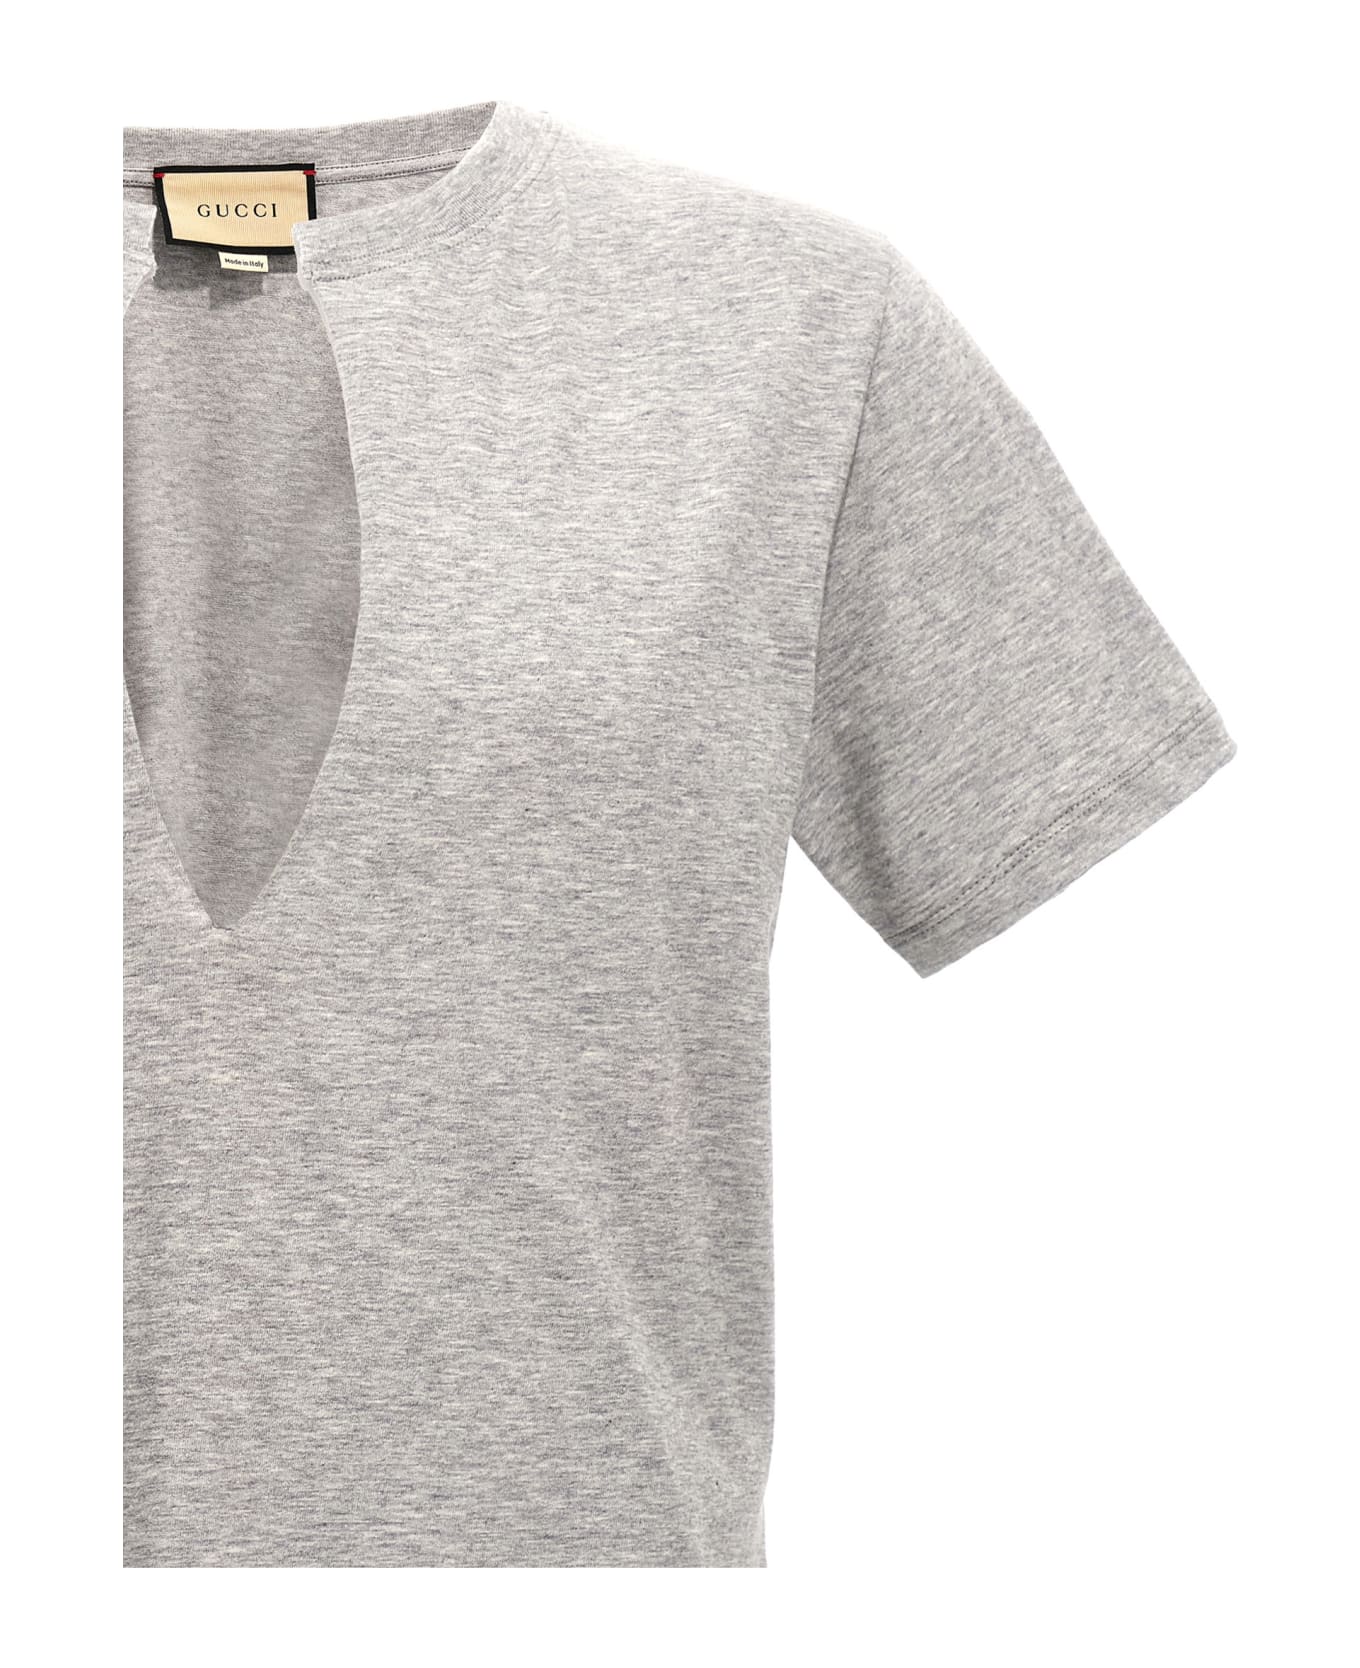 Gucci V-neck T-shirt - Grey Melange